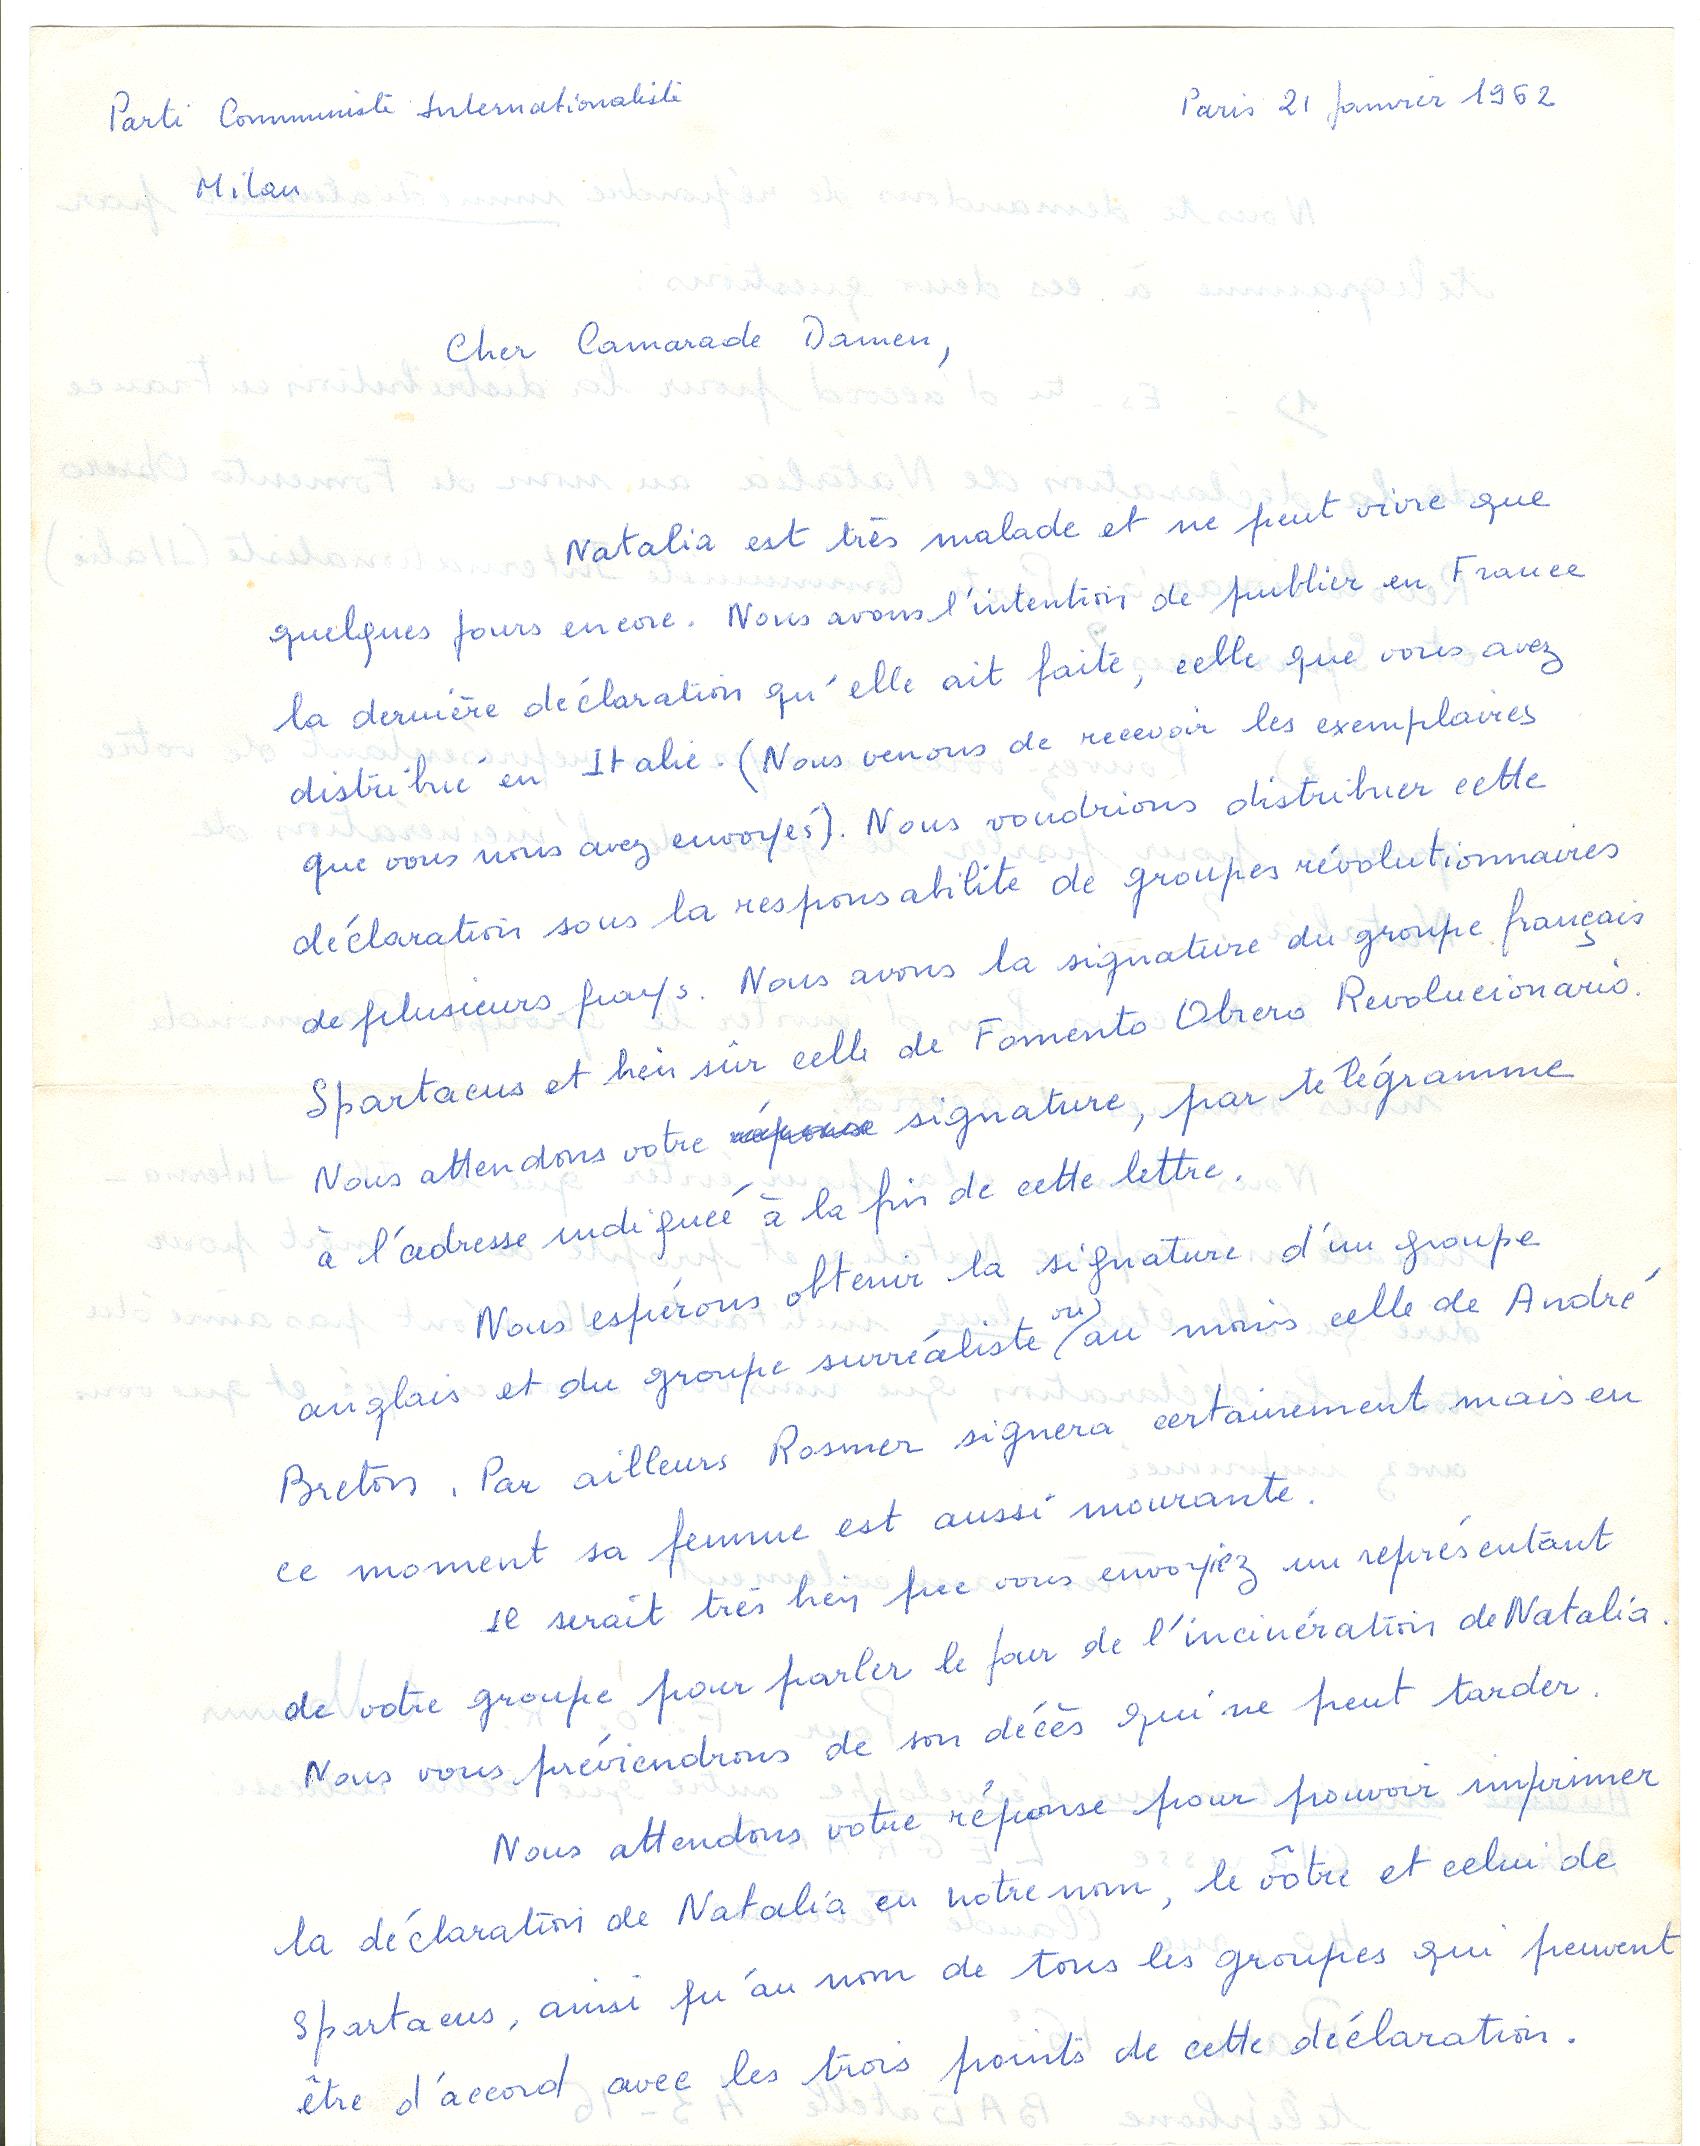 01 >> 1.a - Lettera di Munis a Onorato Damen (21 gennaio 1962)